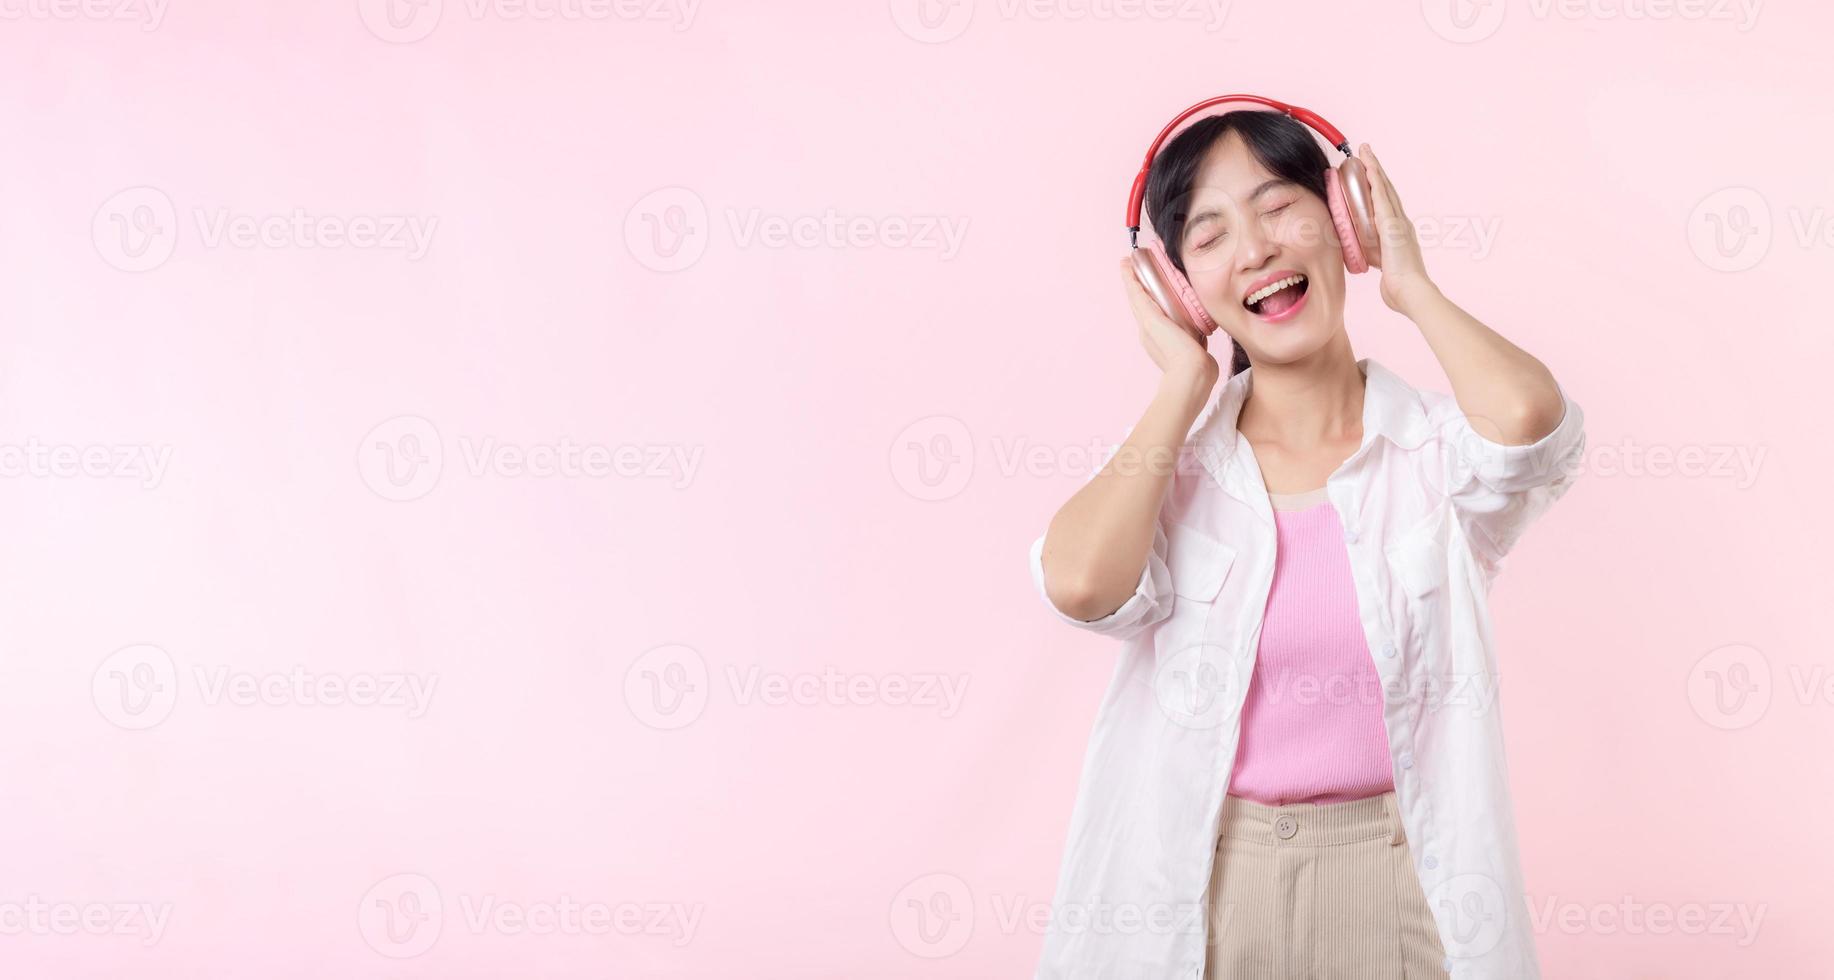 sourire jolie modèle la personne Ecoutez la musique chanson et prendre plaisir Danse avec sans fil casque de musique en ligne l'audio radio son. positif amusement sorti joyeux jeunesse femelle femme chanter sur rose isolé Contexte studio photo